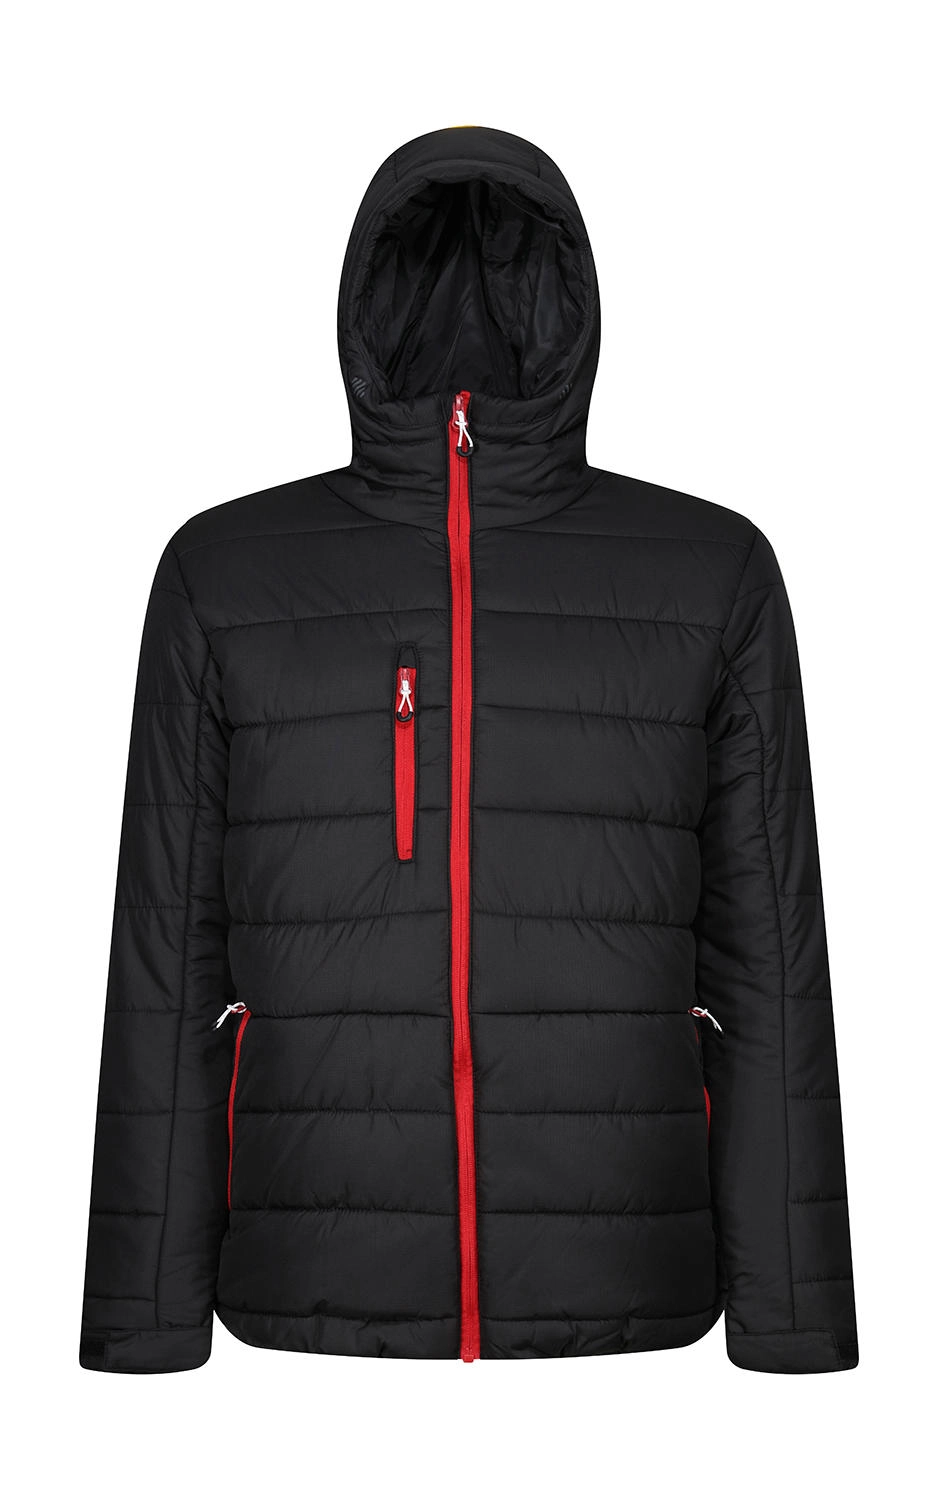 Men’s Navigate Thermal Hooded Jacket zum Besticken und Bedrucken in der Farbe Black/Classic Red mit Ihren Logo, Schriftzug oder Motiv.